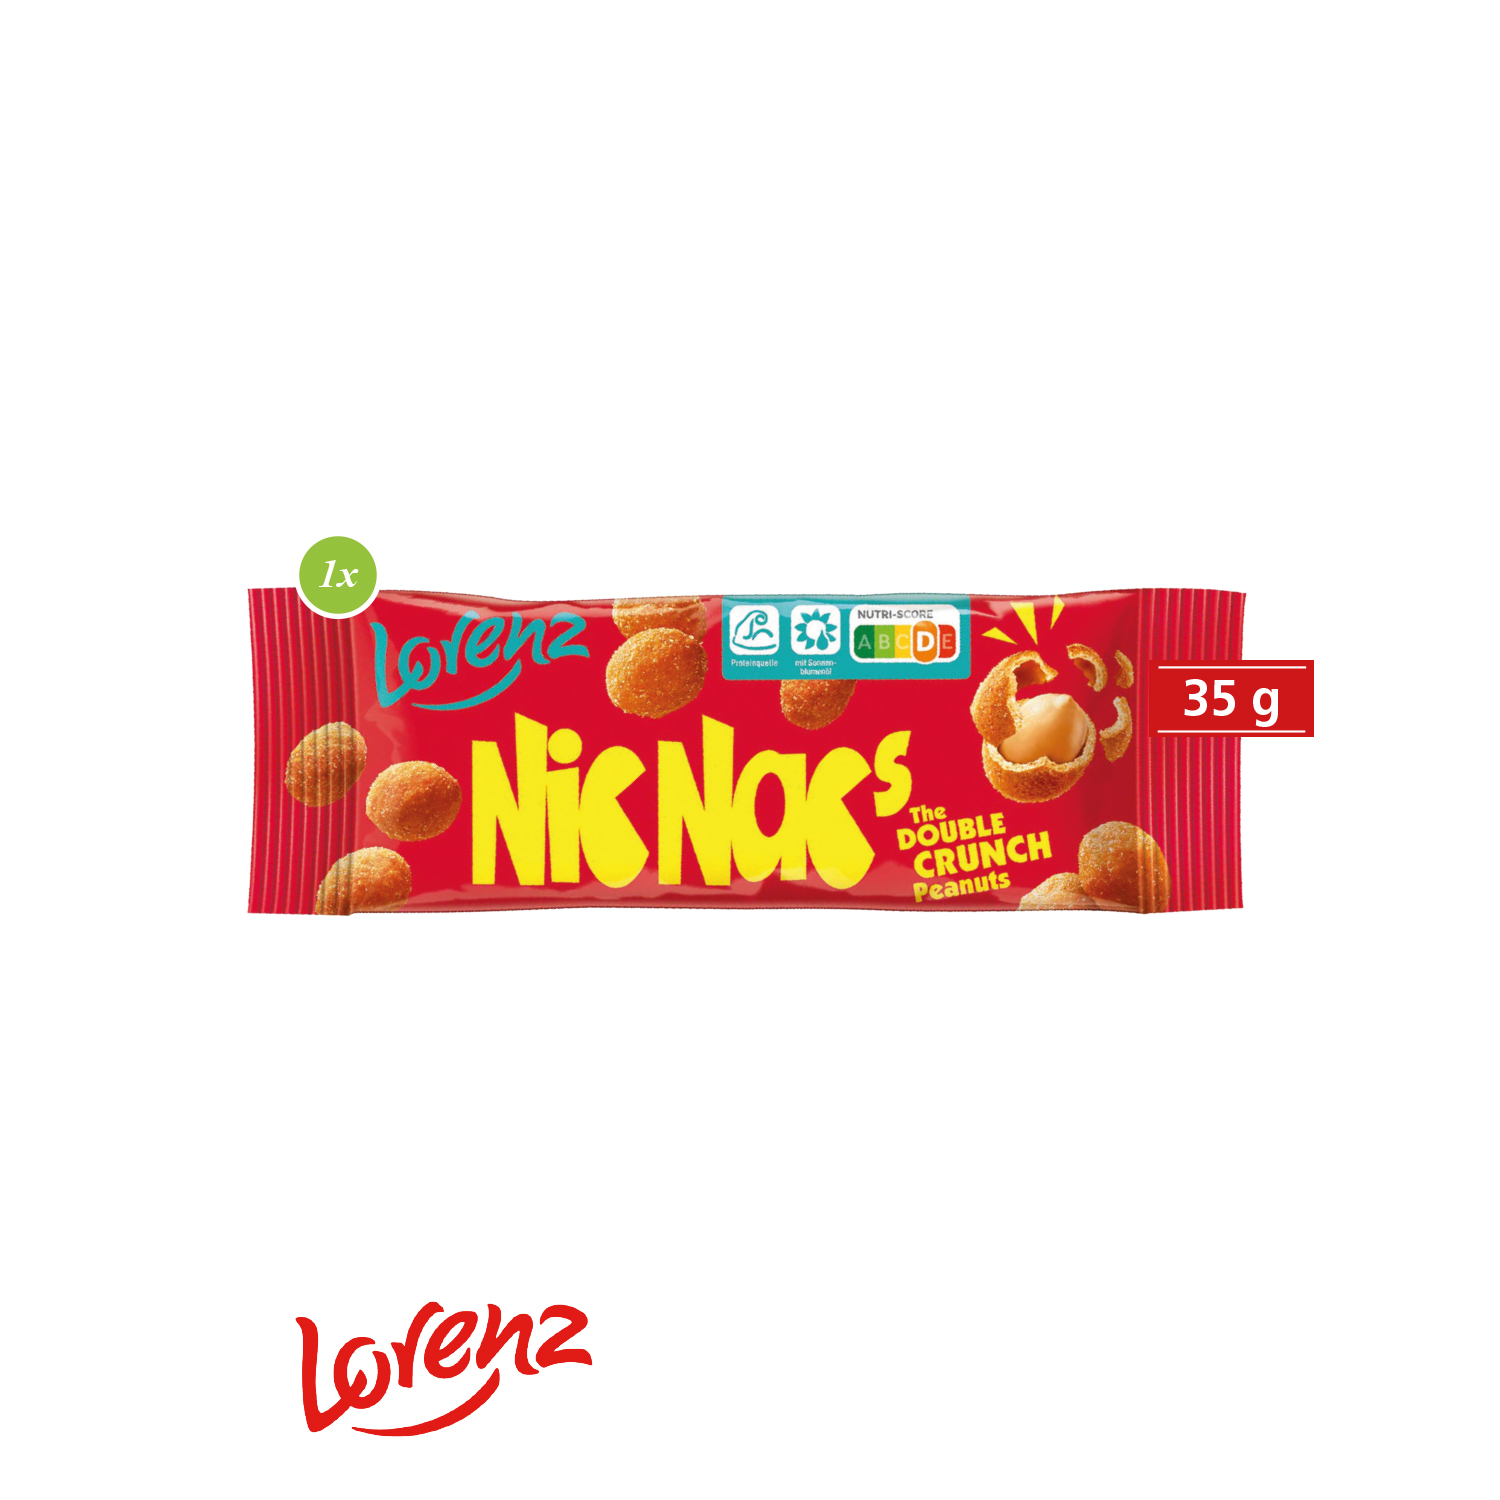 Promo-Snack mit Nic Nac´s, inkl. 4-farbigem Druck